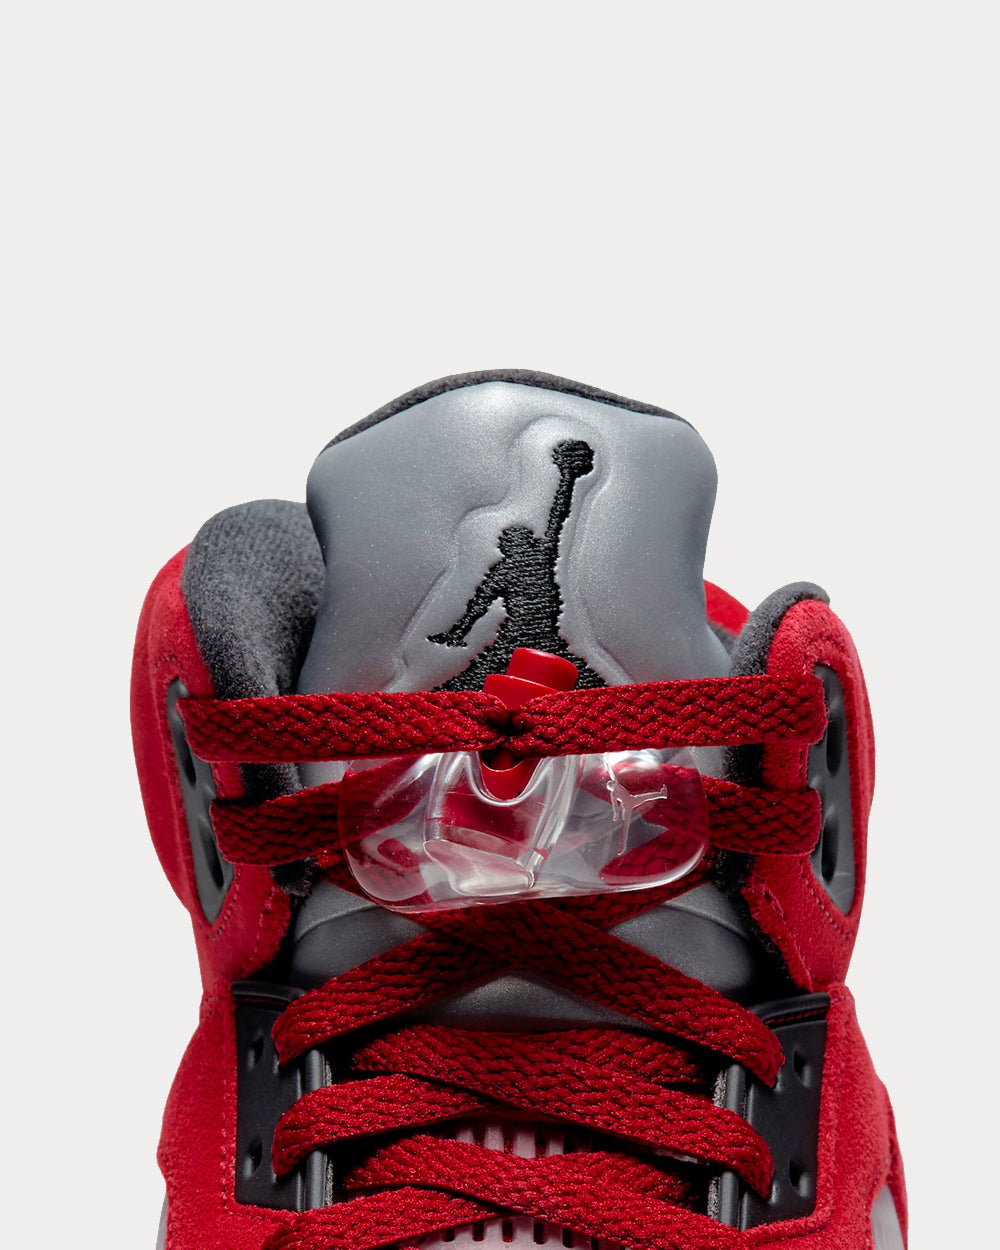 Jordan - Air Jordan 5 Retro Varsity Red / Black / White High Top Sneakers